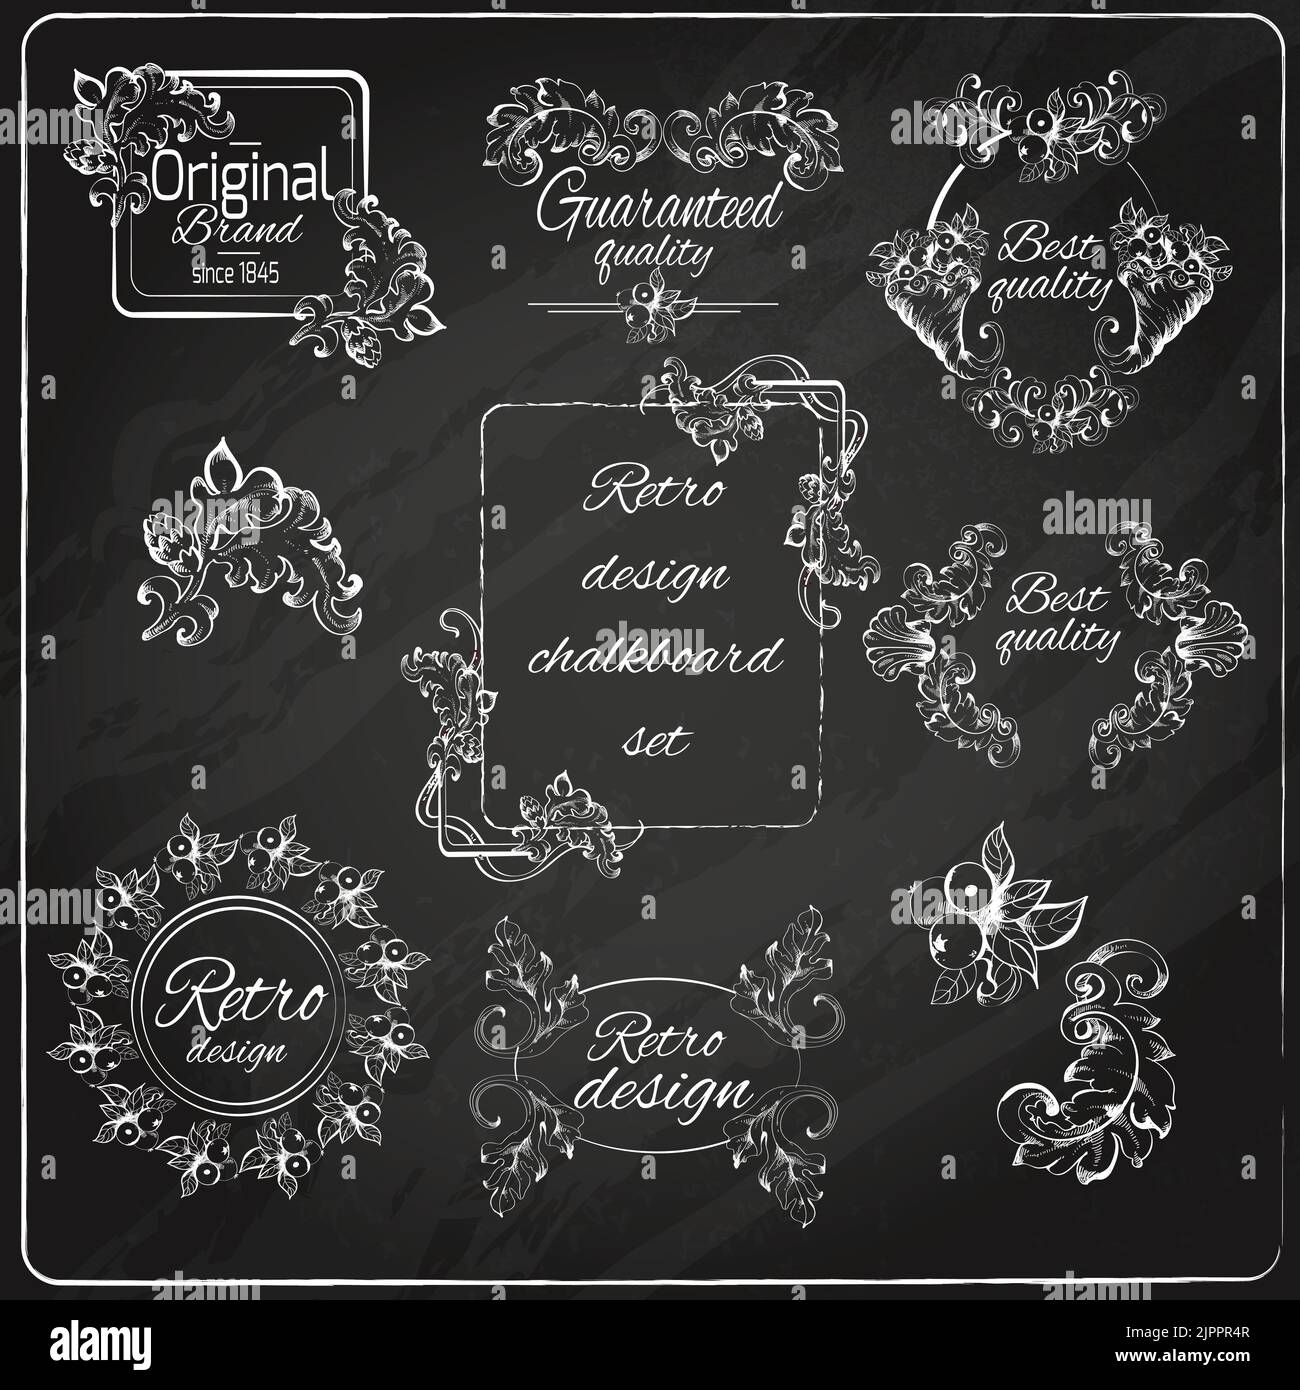 Retro design original floral vintage emblems chalkboard set isolated vector illustration Stock Vector